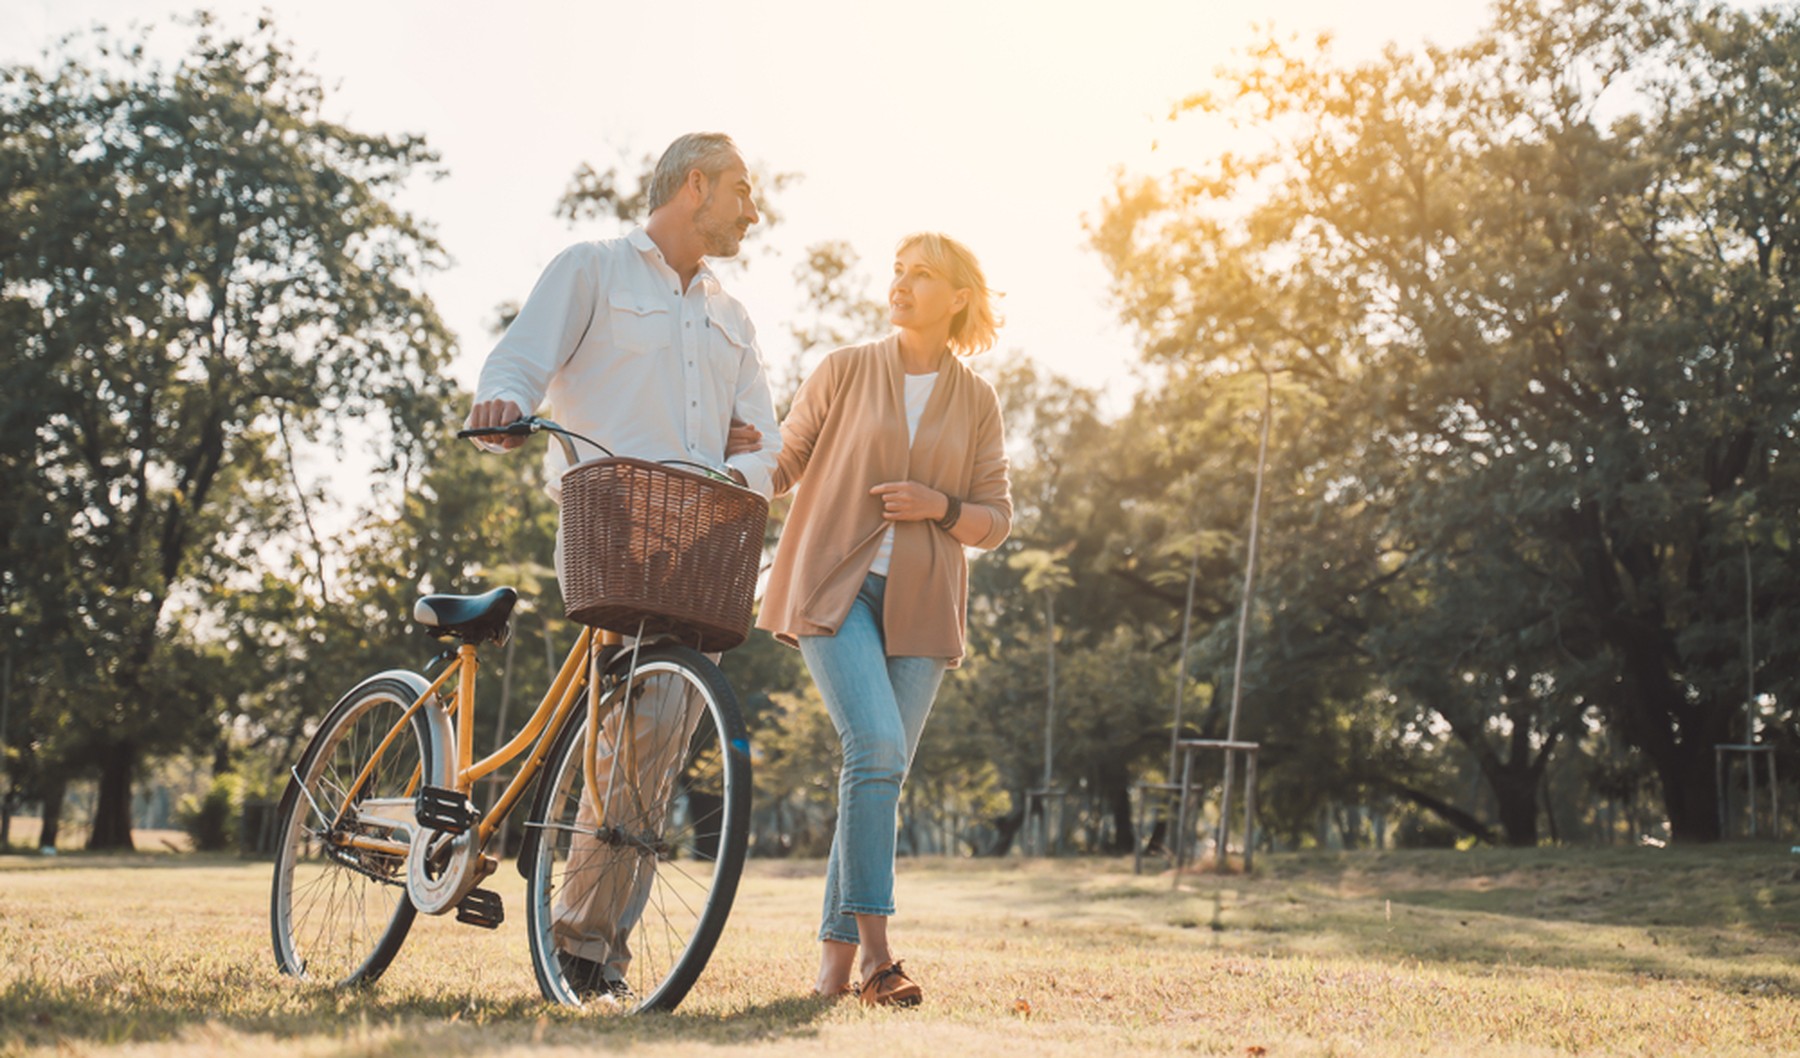 Hombre con una bicicleta de paseo amarilla con cesta caminando por un parque. Del brazo va cogida una mujer con el pelo corto rubio